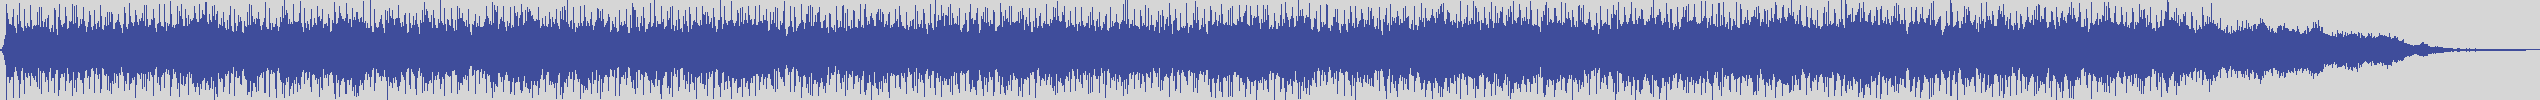 upr [UPR082] Vortex - We Kiss [Original Mix] audio wave form